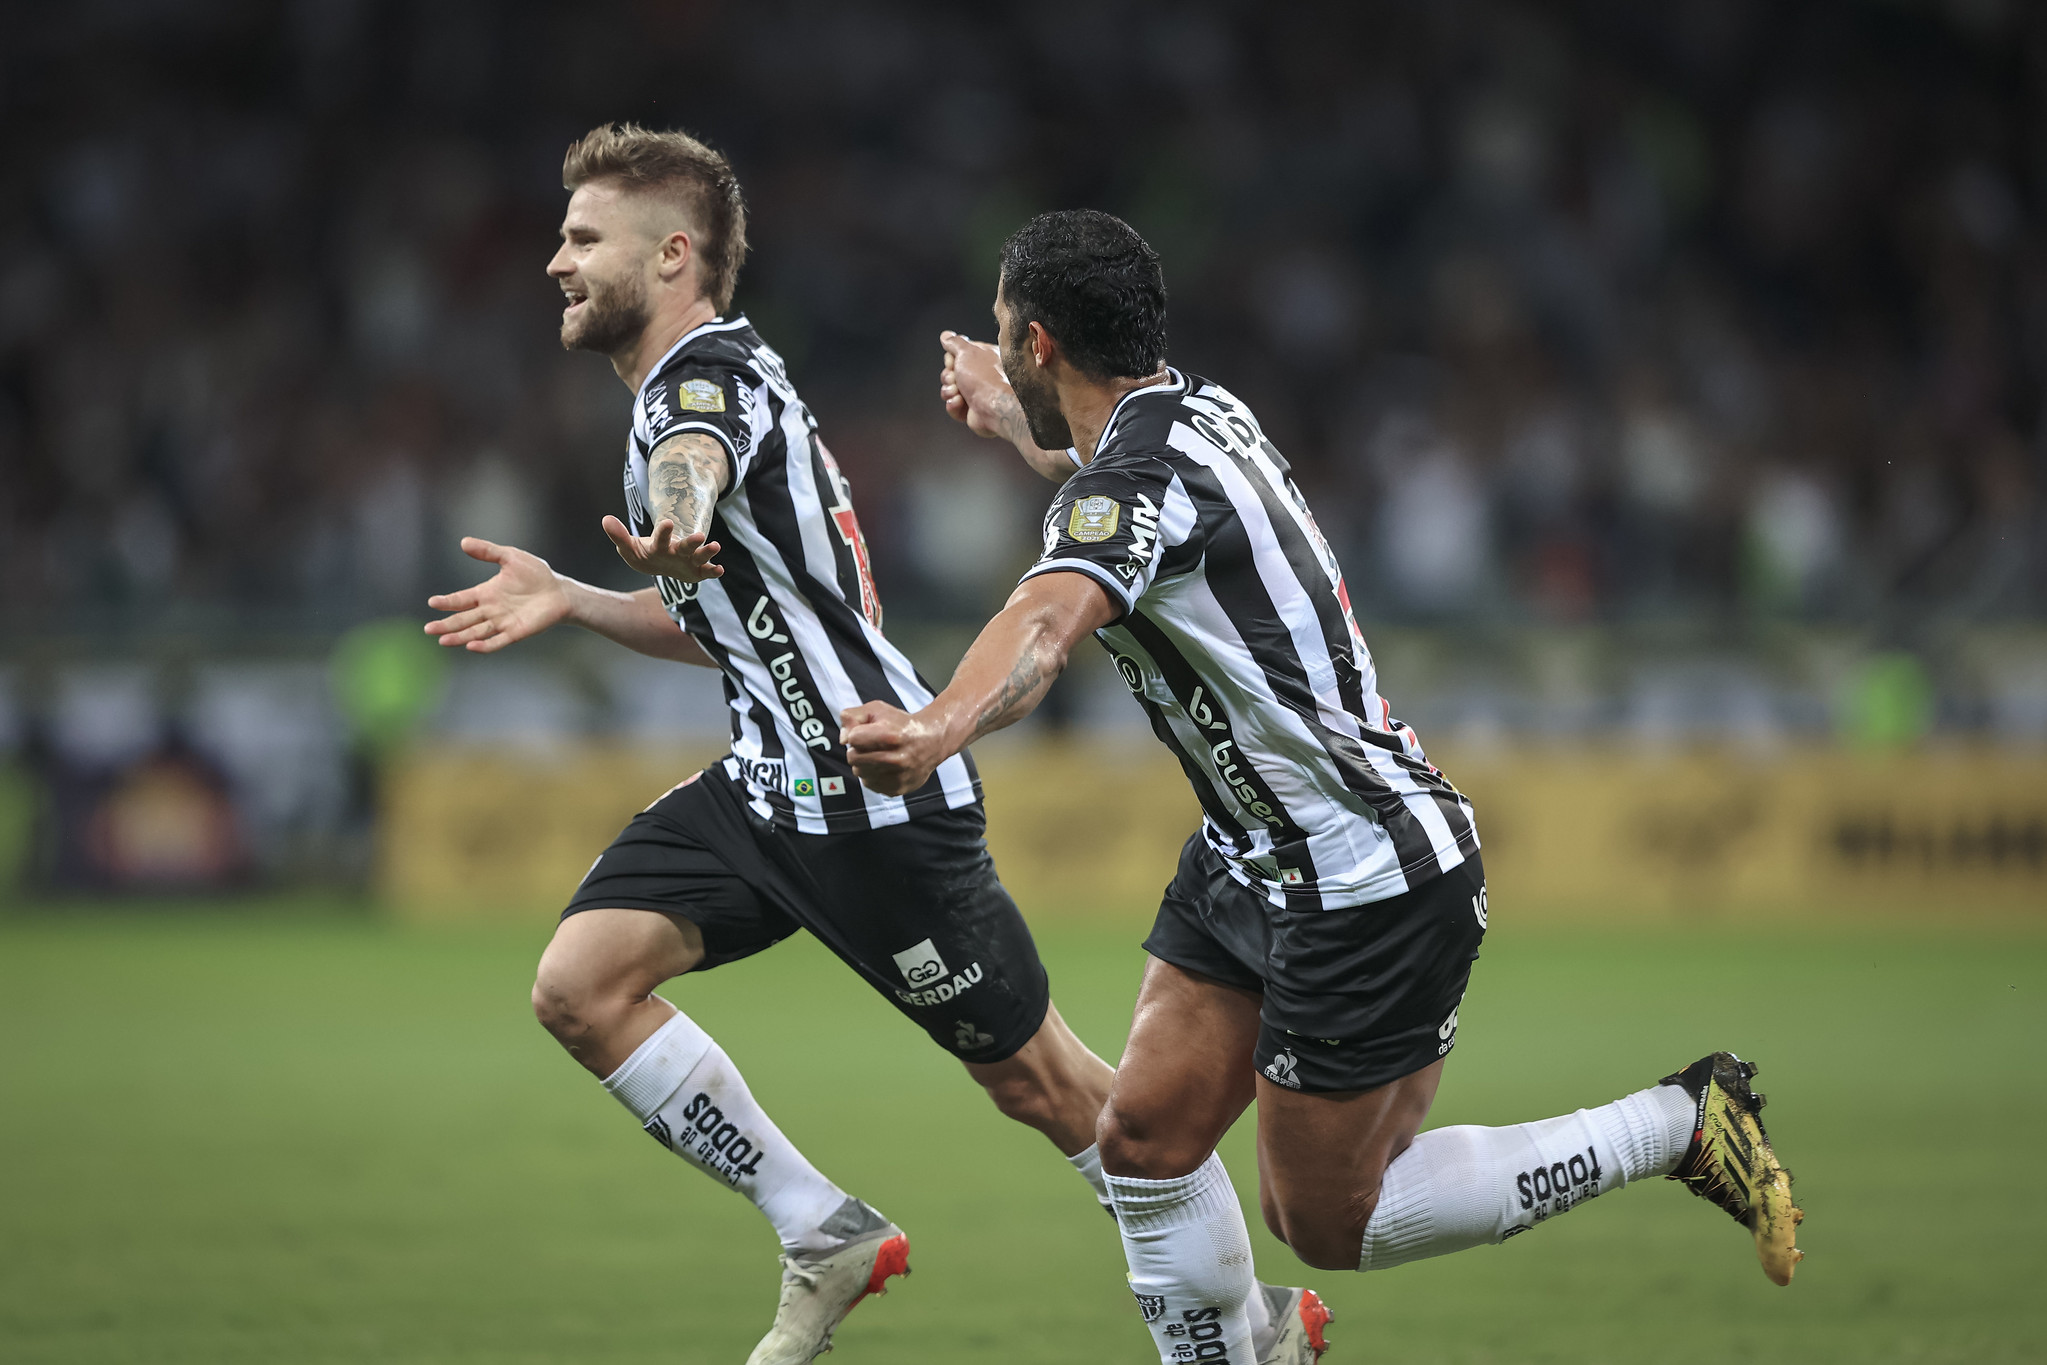 São Paulo vence o Corinthians pelo Campeonato Paulista Feminino e encosta  na liderança